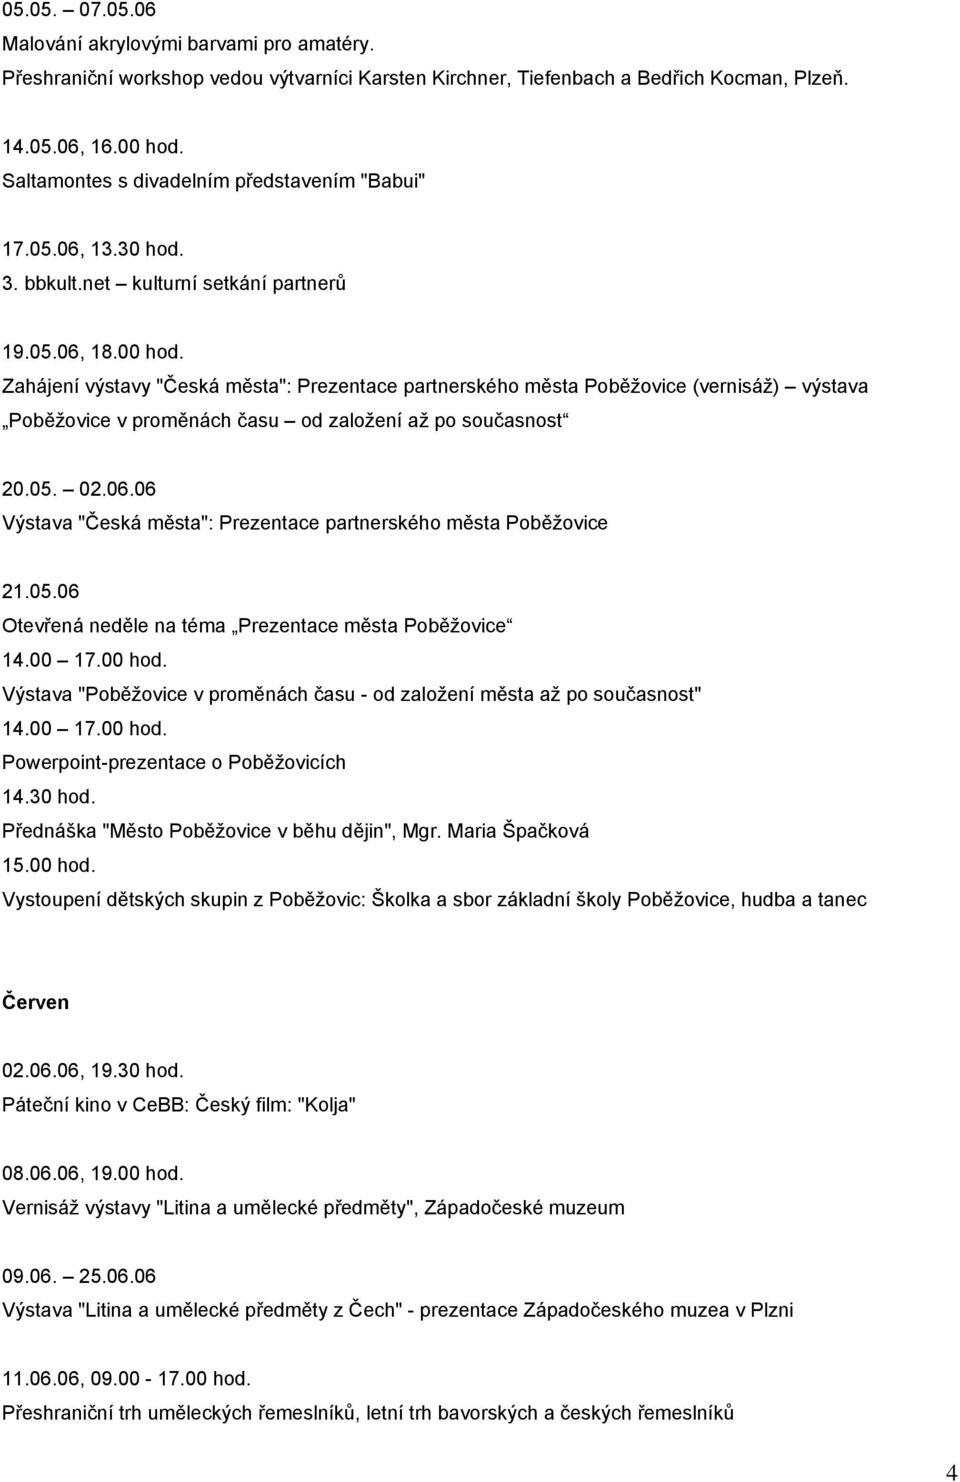 Zahájení výstavy "Česká města": Prezentace partnerského města Poběžovice (vernisáž) výstava Poběžovice v proměnách času od založení až po současnost 20.05. 02.06.